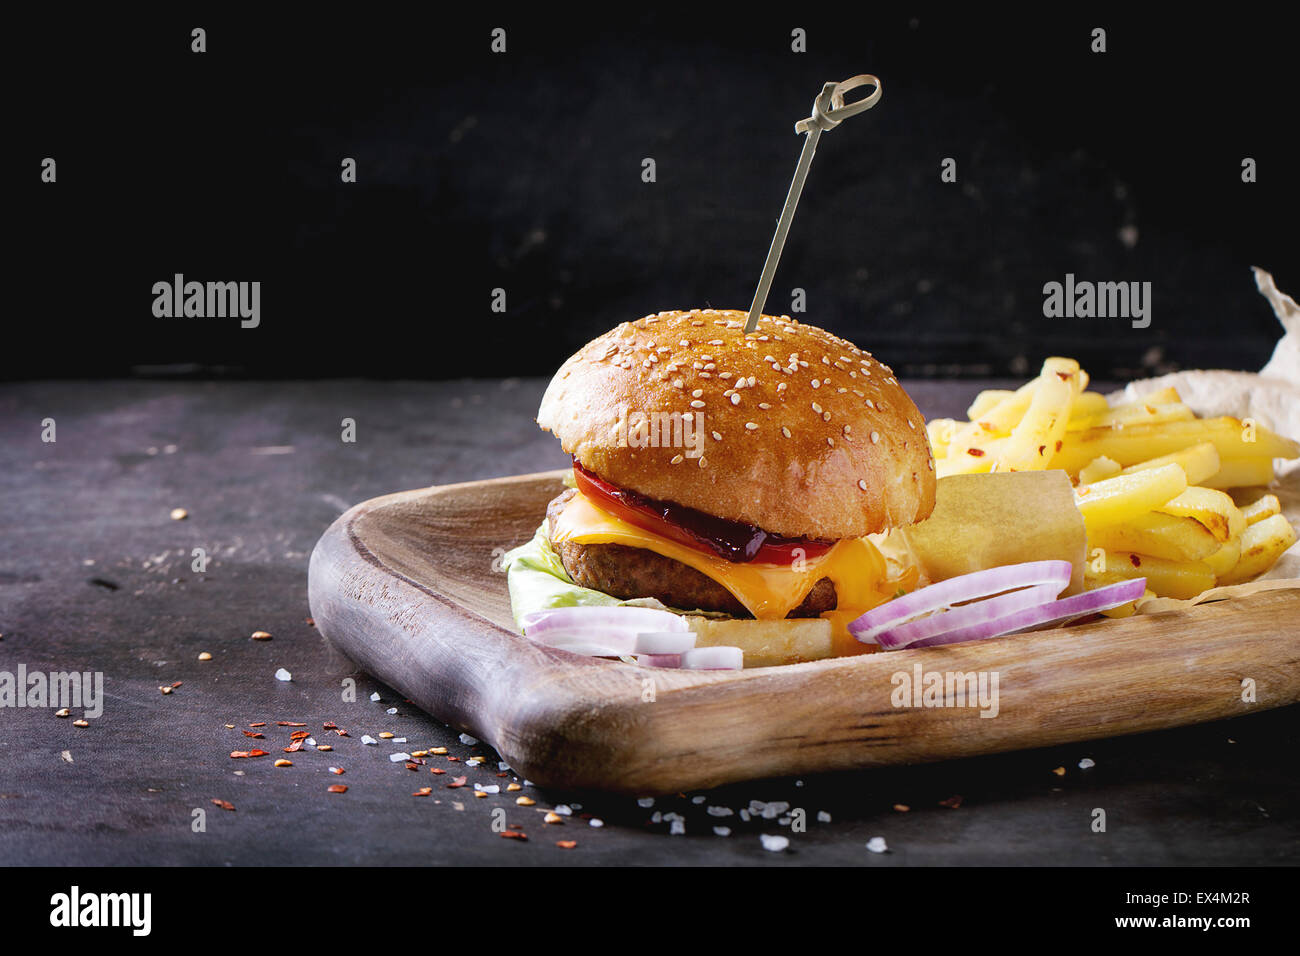 Holzplatte mit frischen hausgemachten Burger und gegrillte Kartoffeln auf dunklem Hintergrund. Stockfoto